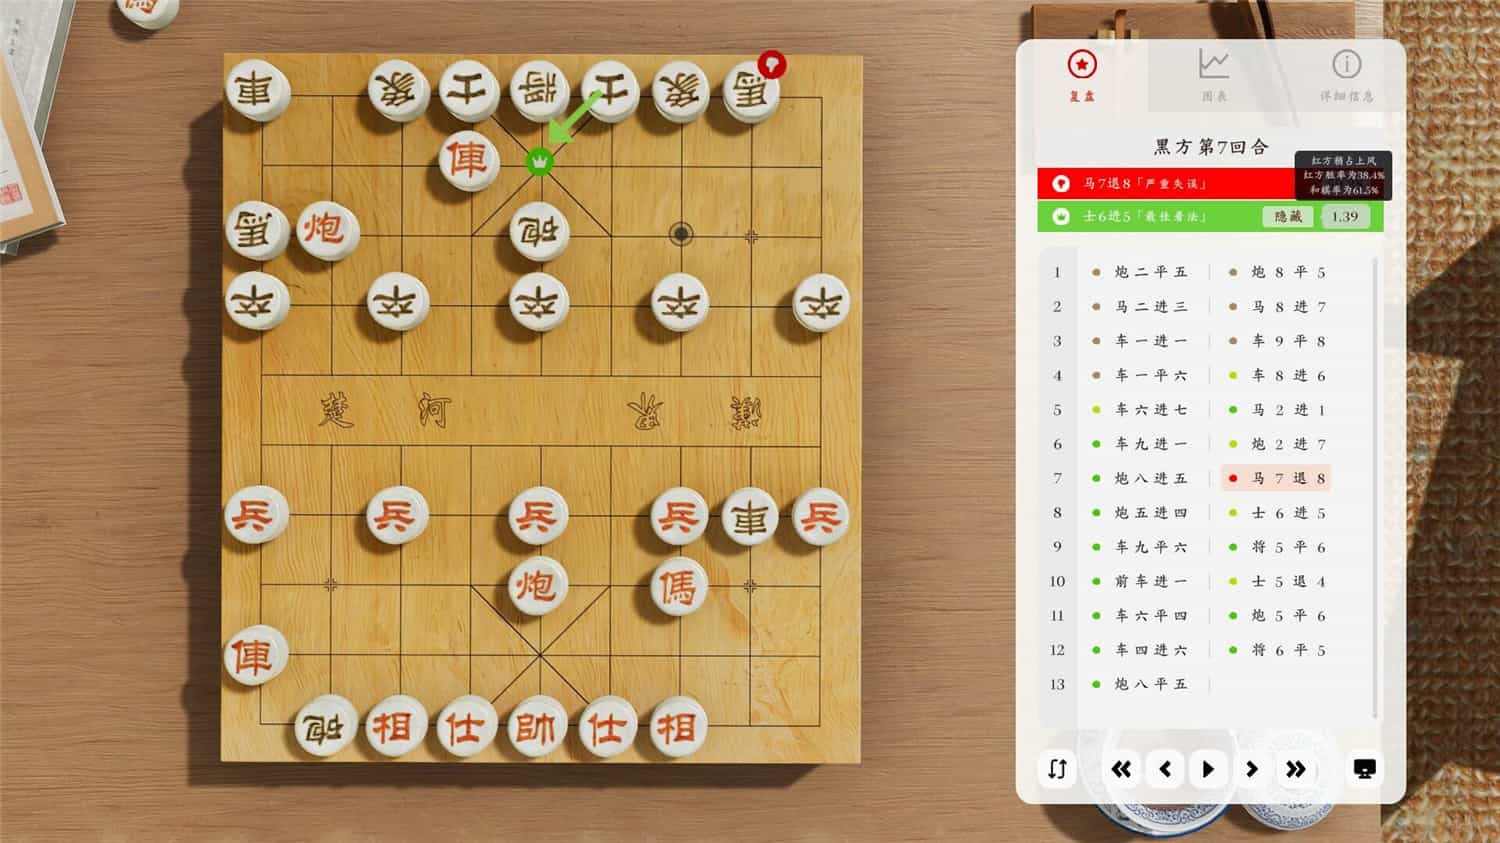 棋弈无限：中国象棋/Just Xiangqi v1.0.3 官方简体中文 1.9GB插图11